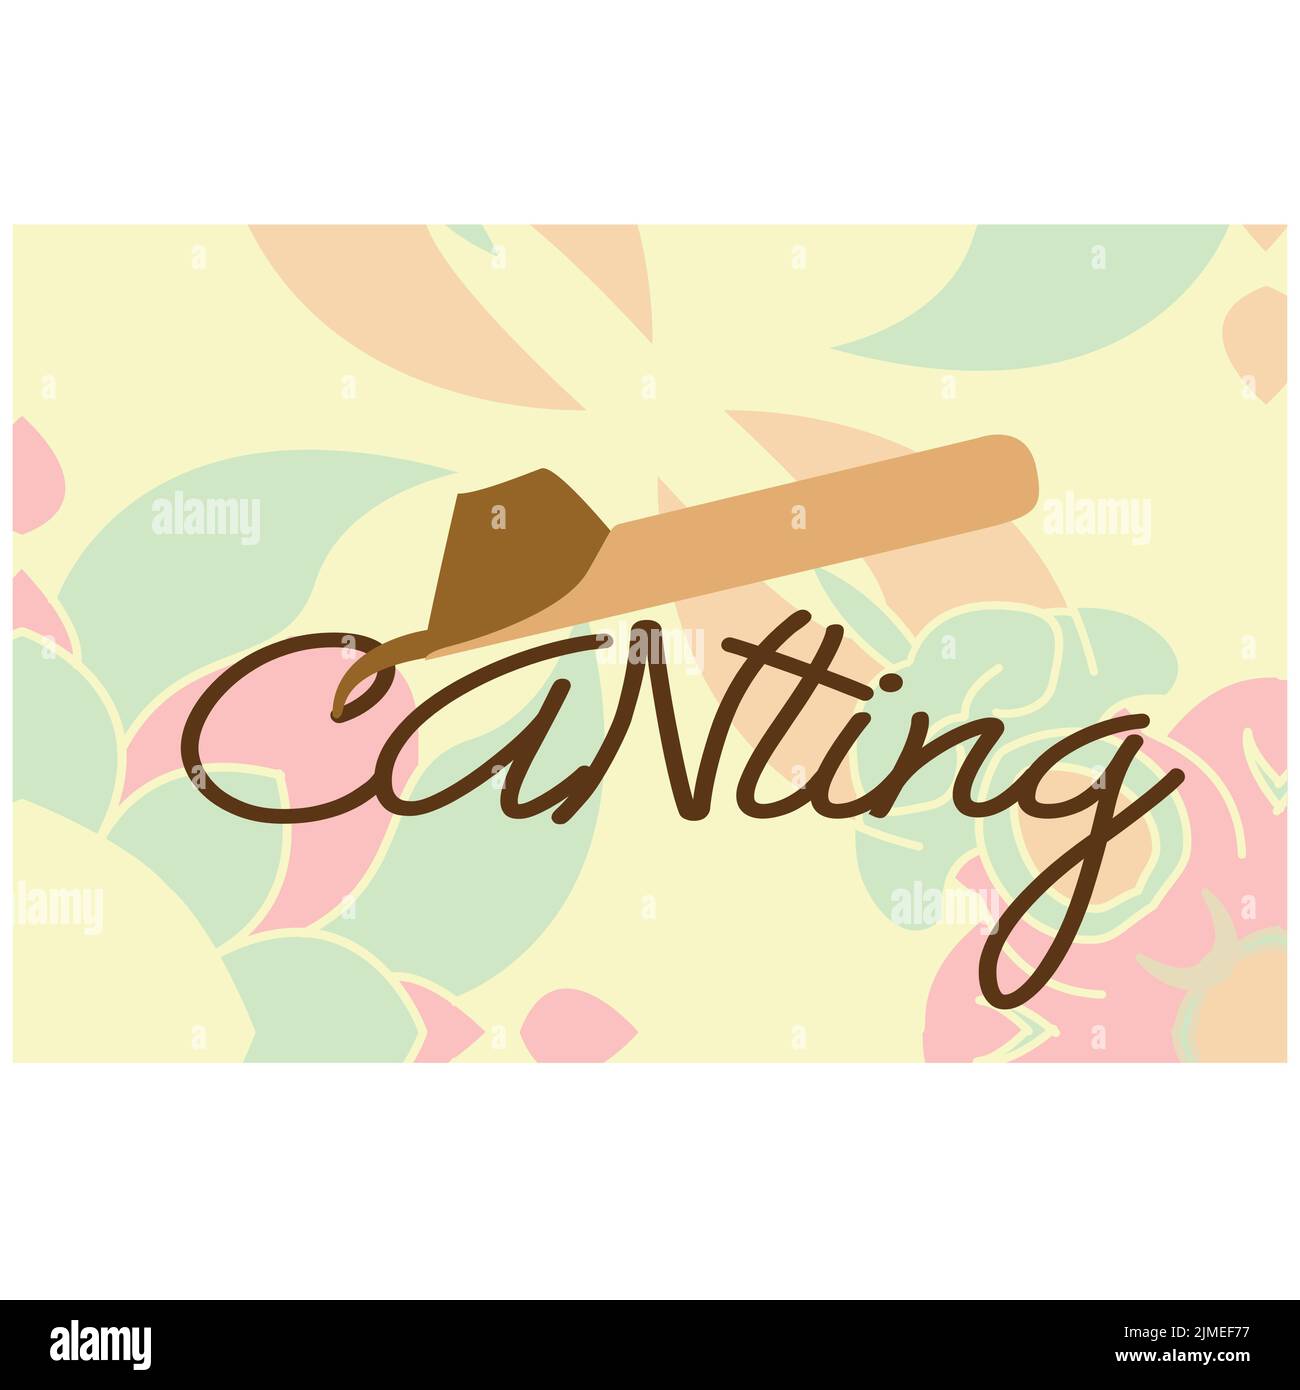 Canting, uno strumento usato per fare batik tradizionalmente in Indonesia. Loghi ispiratori. File vettoriale, eps 10 Illustrazione Vettoriale